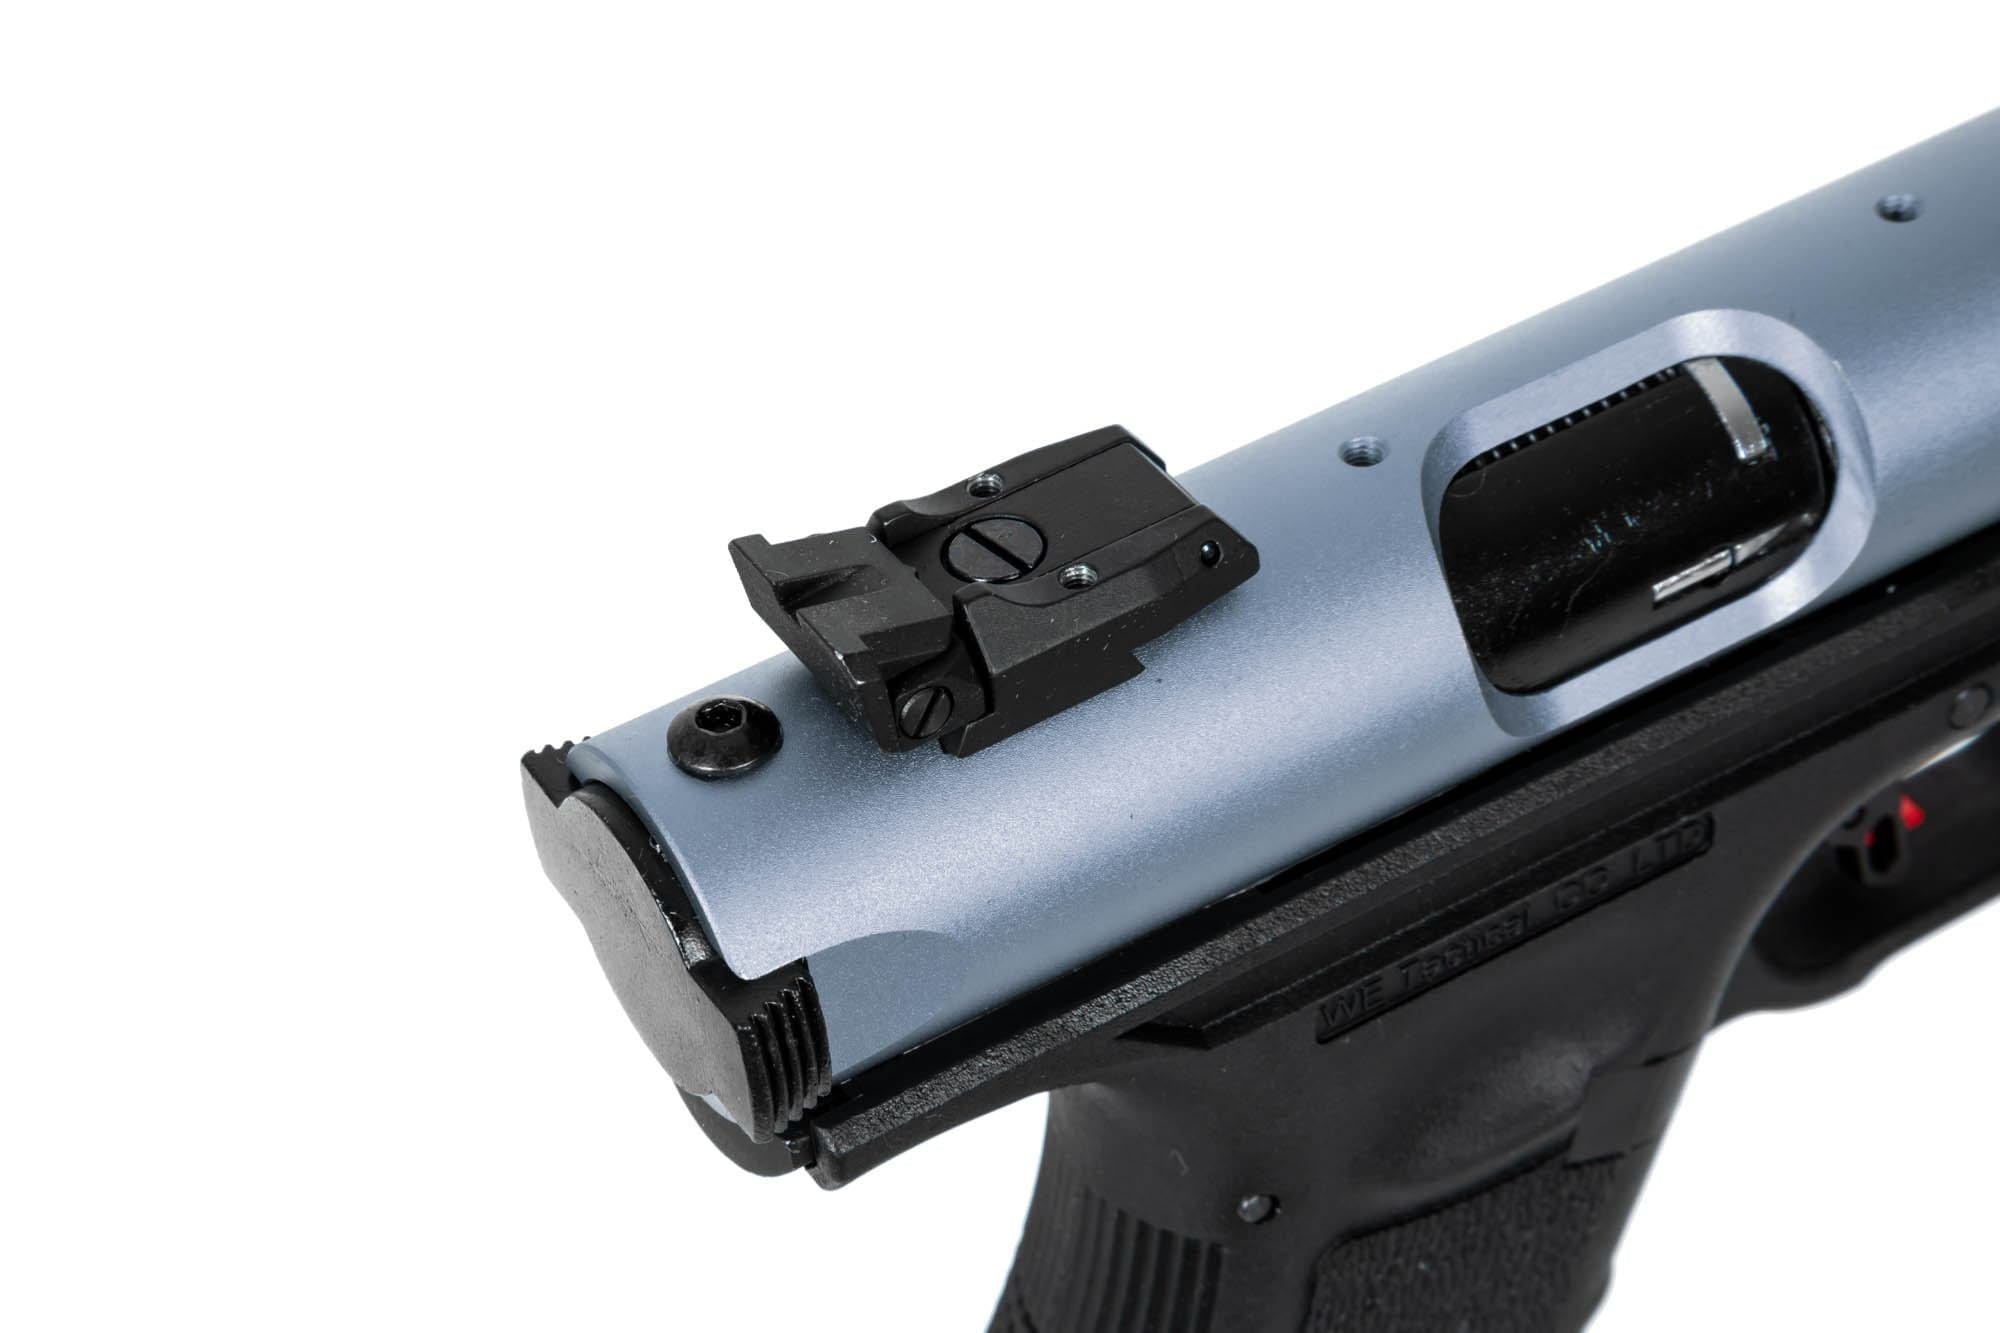 Pistolet à gaz WE Galaxy Airsoft - Bleu